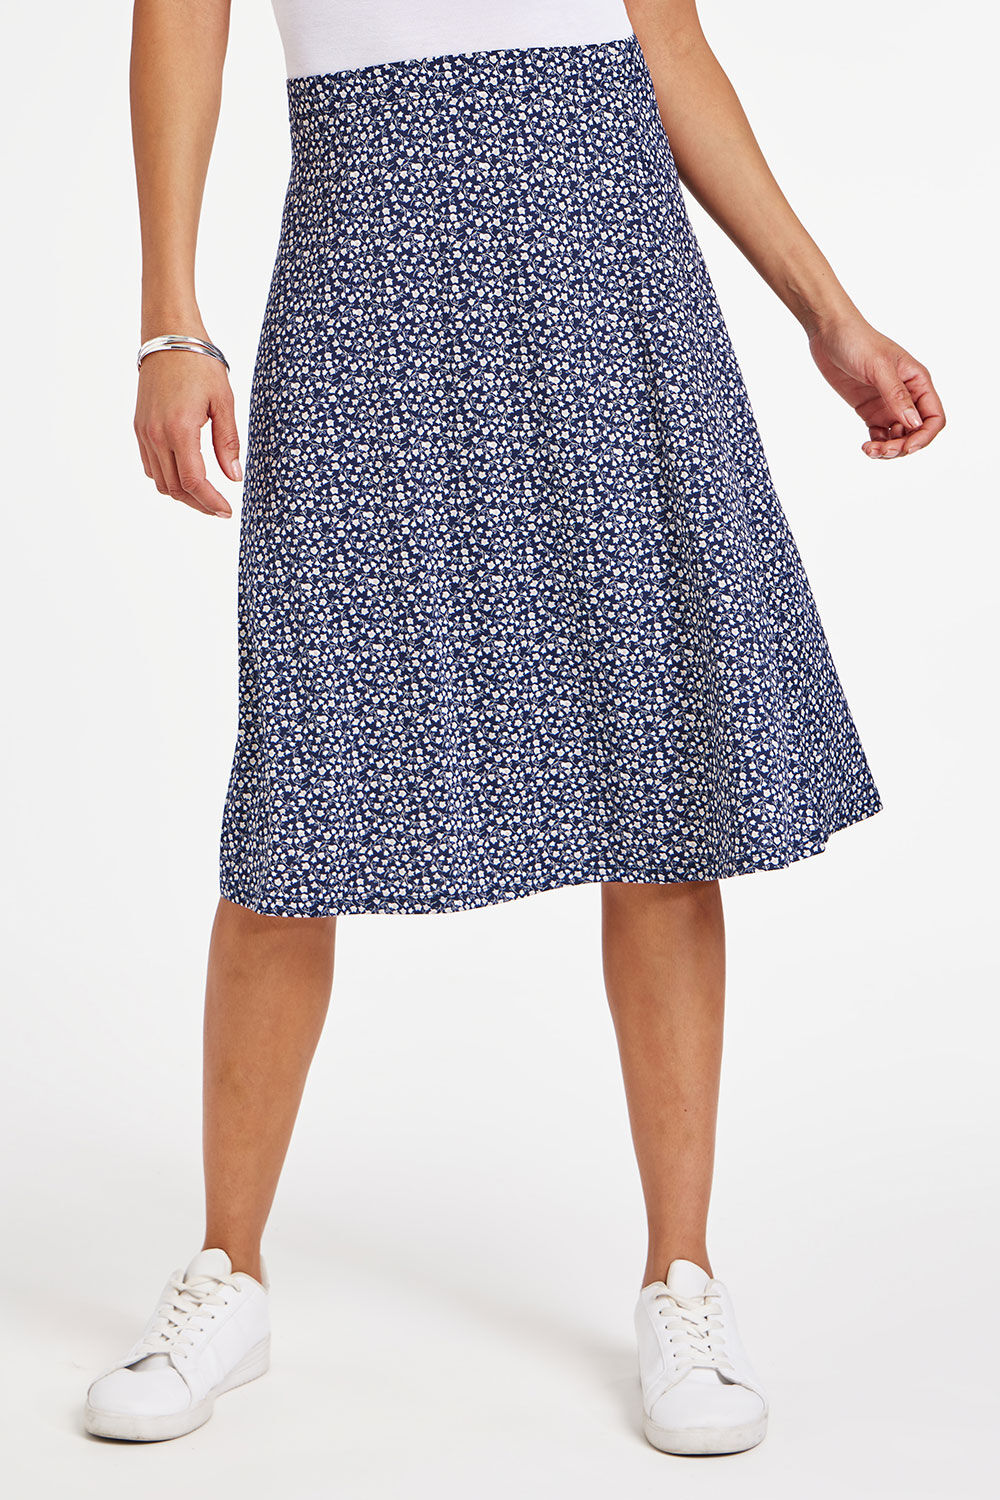 Bonmarche Navy Ditsy Print Flippy Skirt, Size: 24